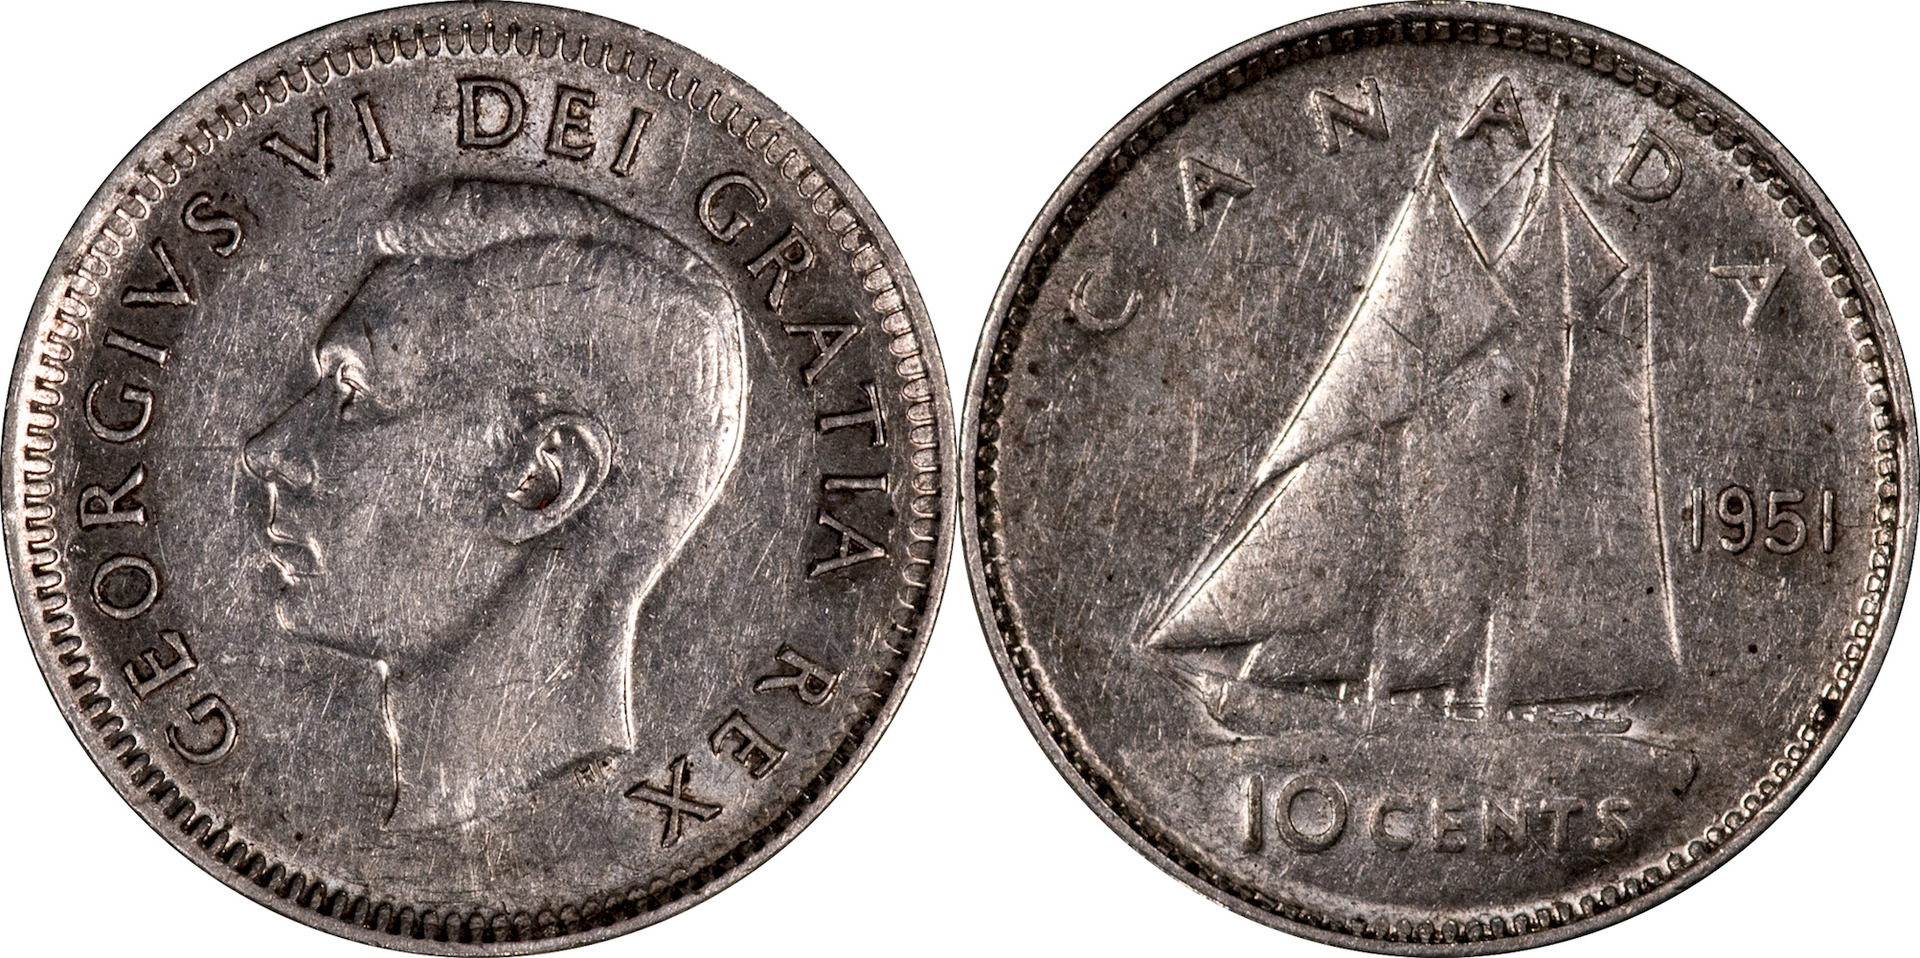 Canada - 1951 10 Cents DDR.jpg